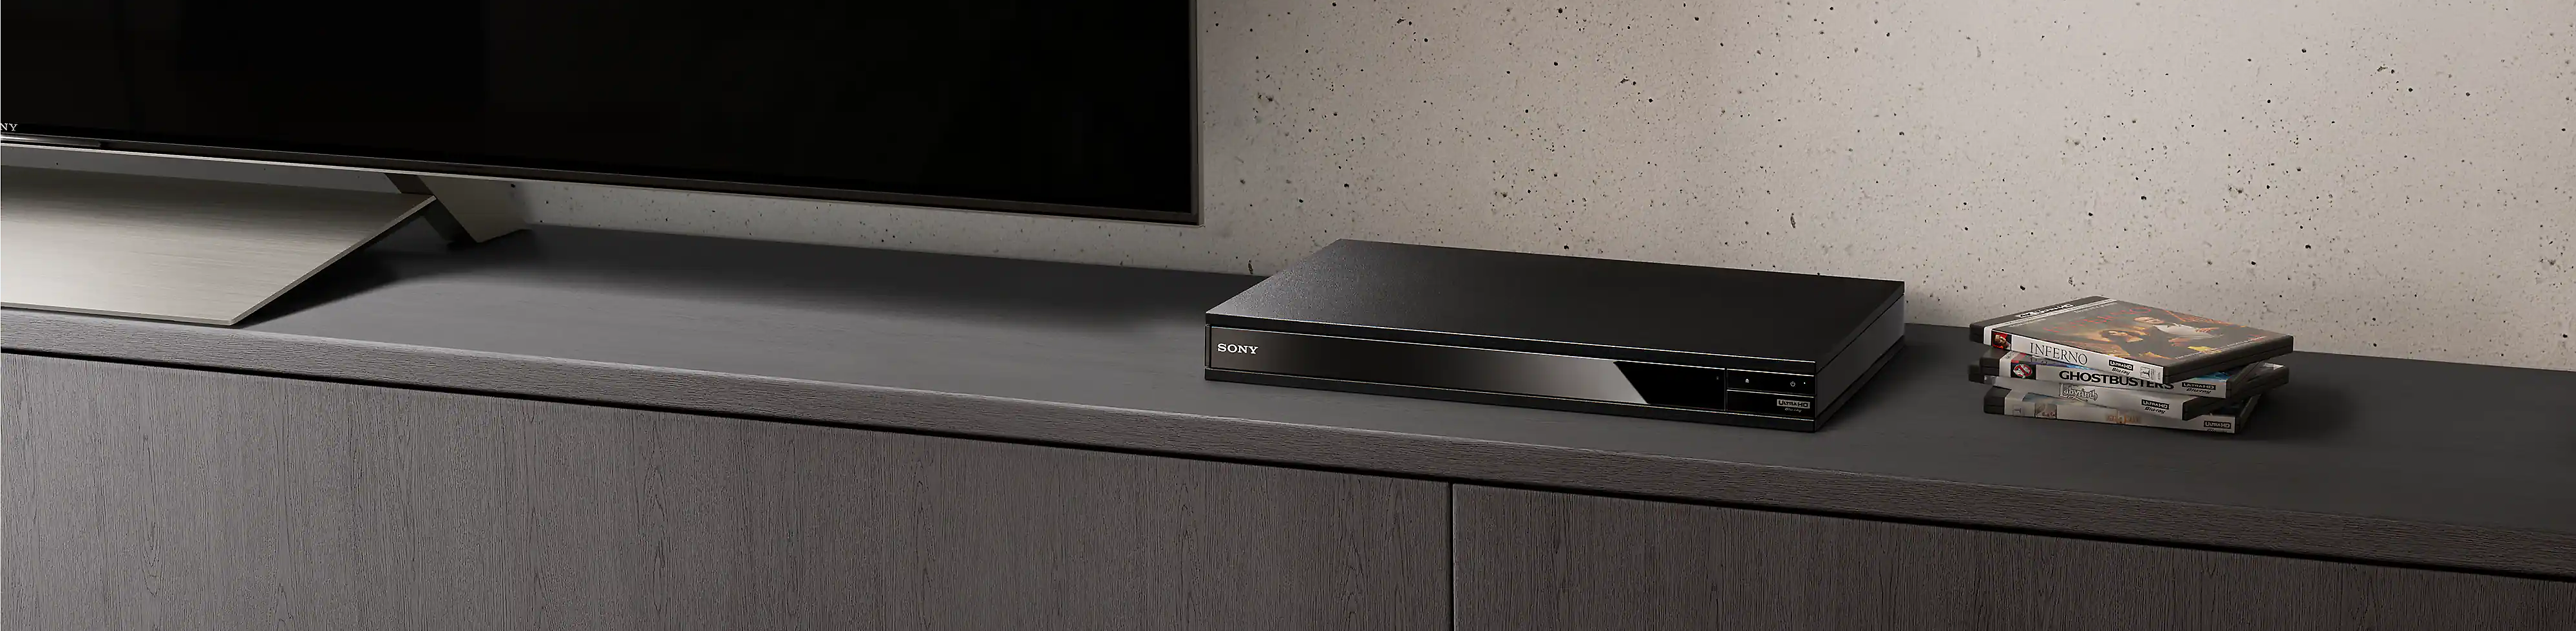 Ein schwarzer Blu-ray Disc Player zwischen einem Stapel von Blu-ray Discs und einem schwarzen Fernseher.